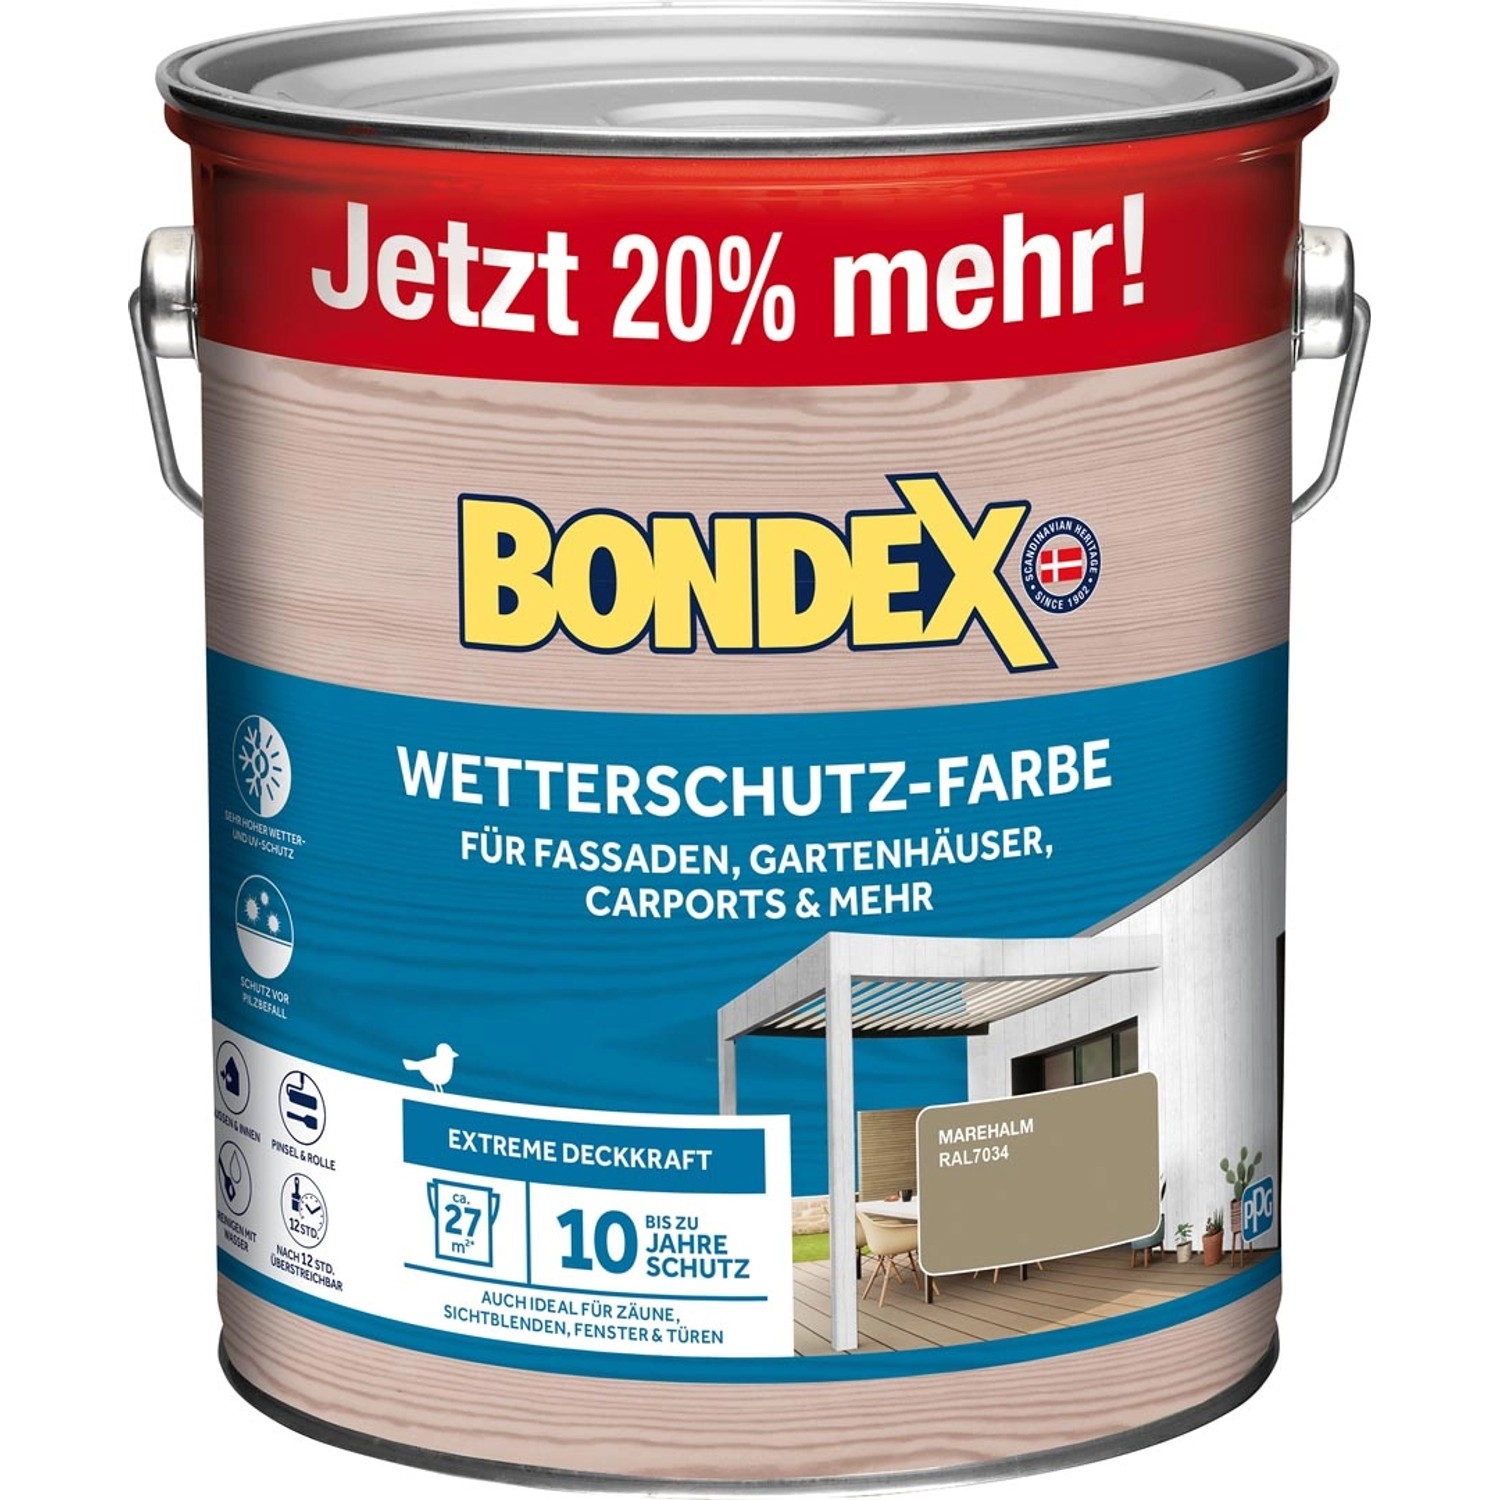 Bondex Wetterschutz-Farbe RAL 7034 Marehalm (Braun) - 3 l reicht für ca. 27 m²